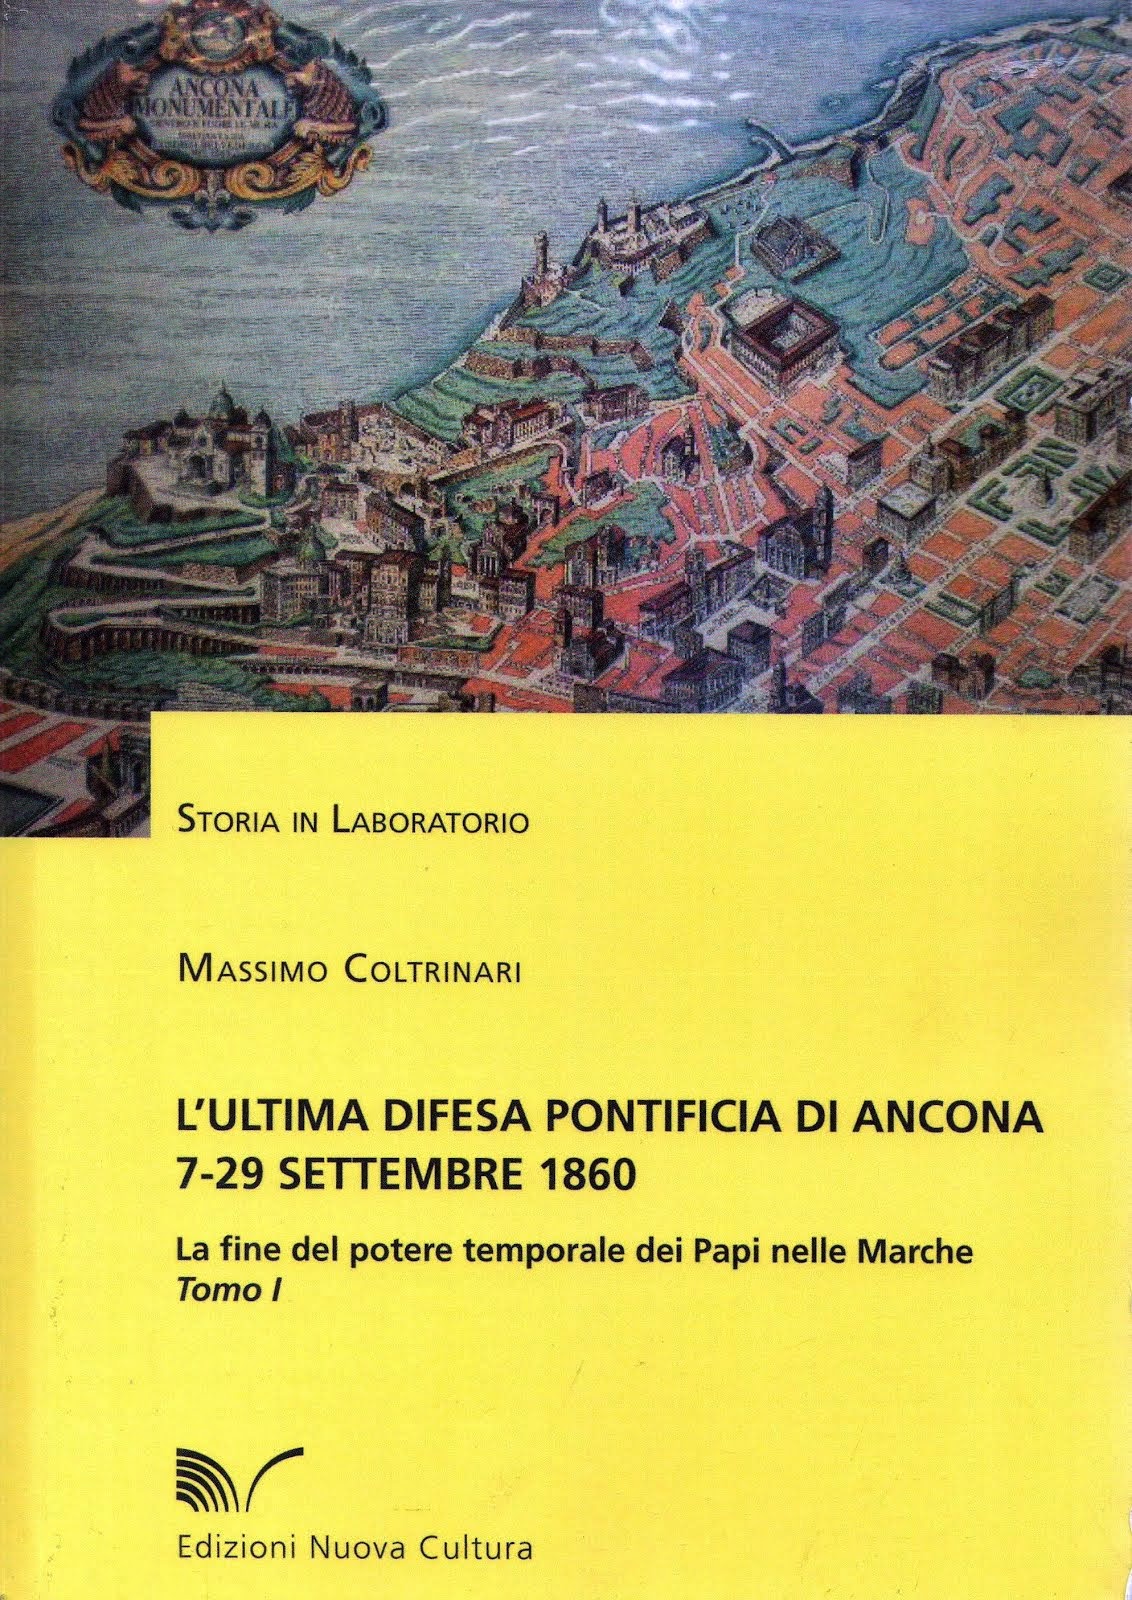 L'Ultima difesa pontificia di Ancona. La fine del potere temporale dei Papi 7-29 settembre 1860